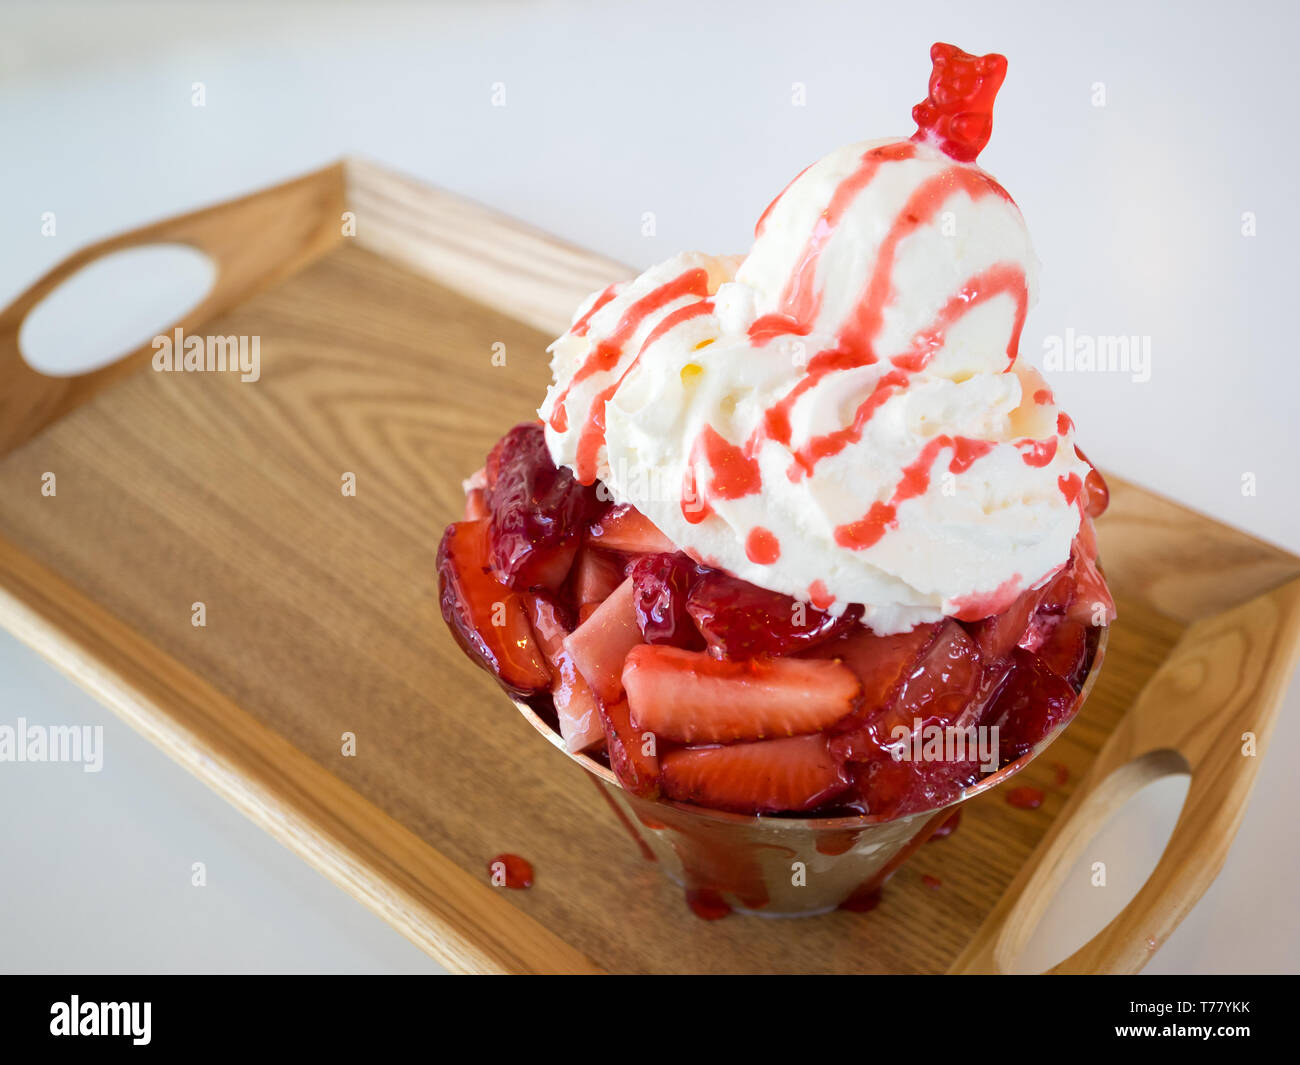 Bingsoo bingsu fraise (fraises), un dessert glace pilée coréen. Banque D'Images